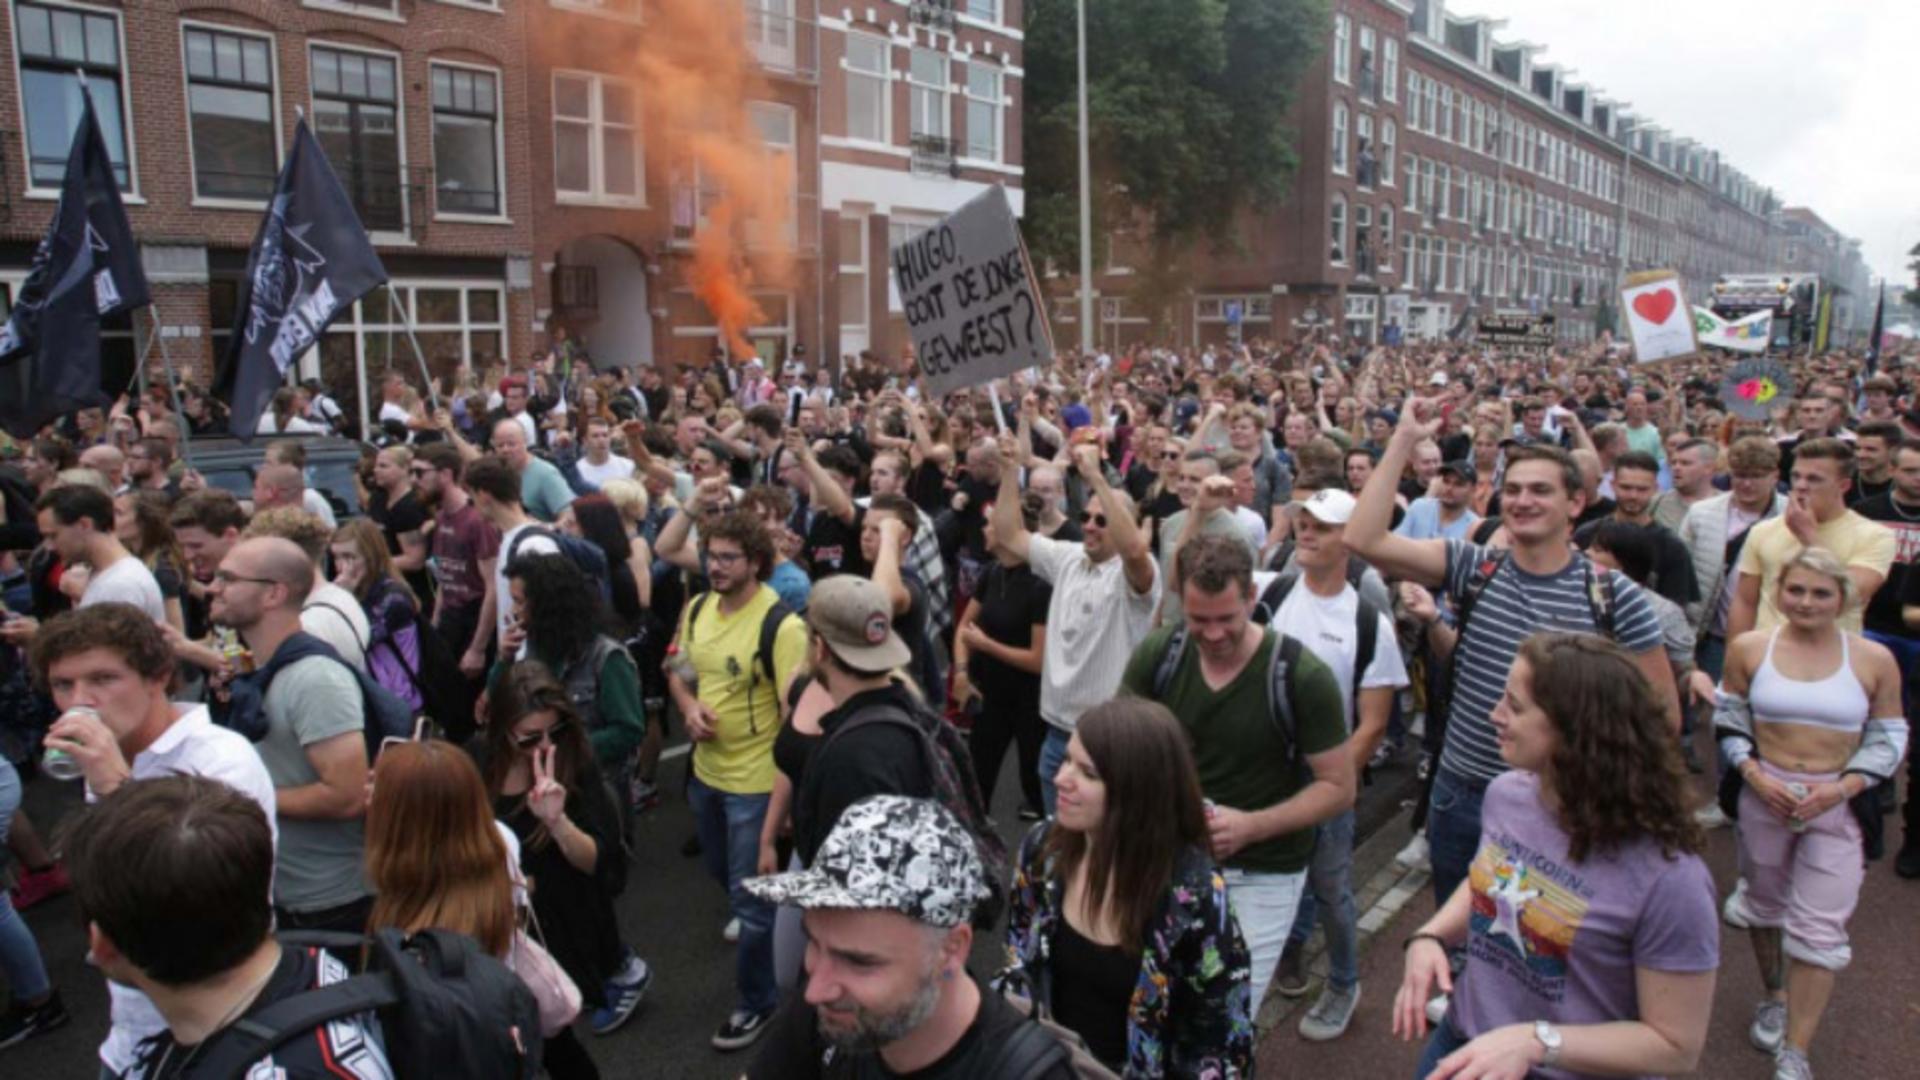 Protest în Amsterdam împoriva restricțiilor anti-COVID și a guvernului. Foto: Profi Media